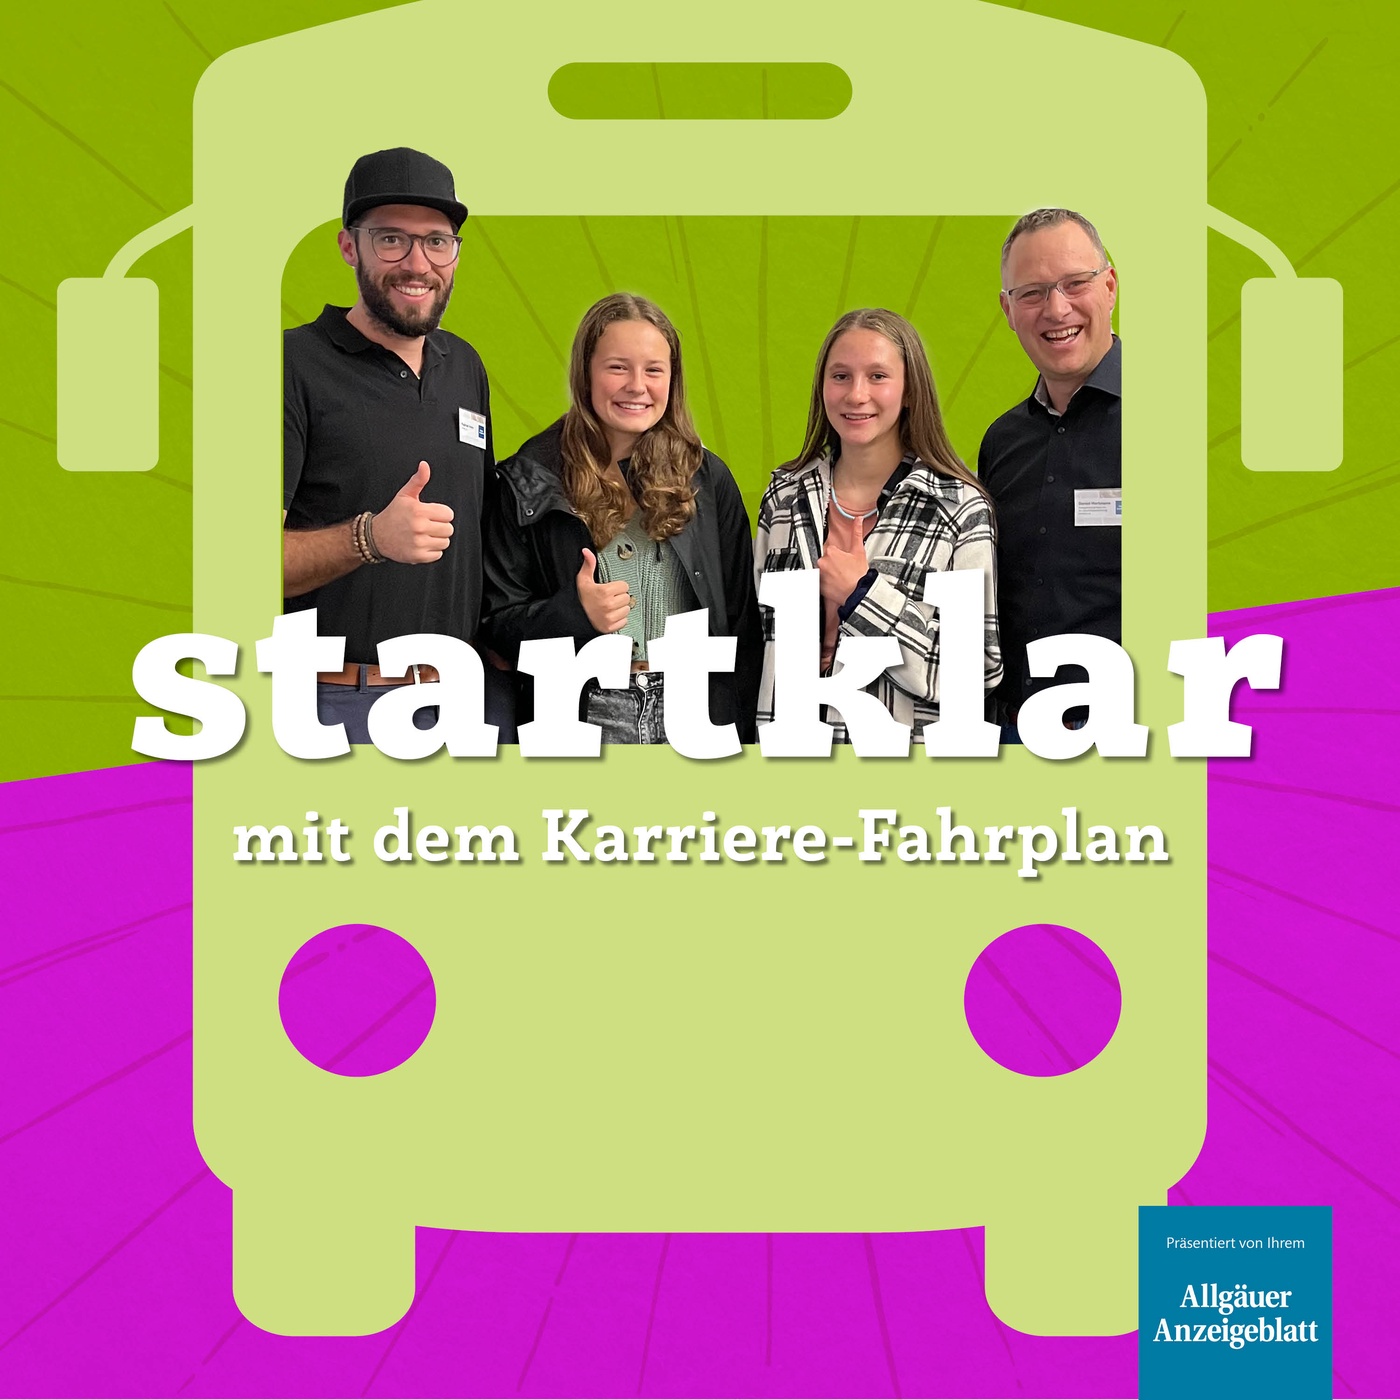 Podcast vom Karriere-Fahrplan in Immenstadt